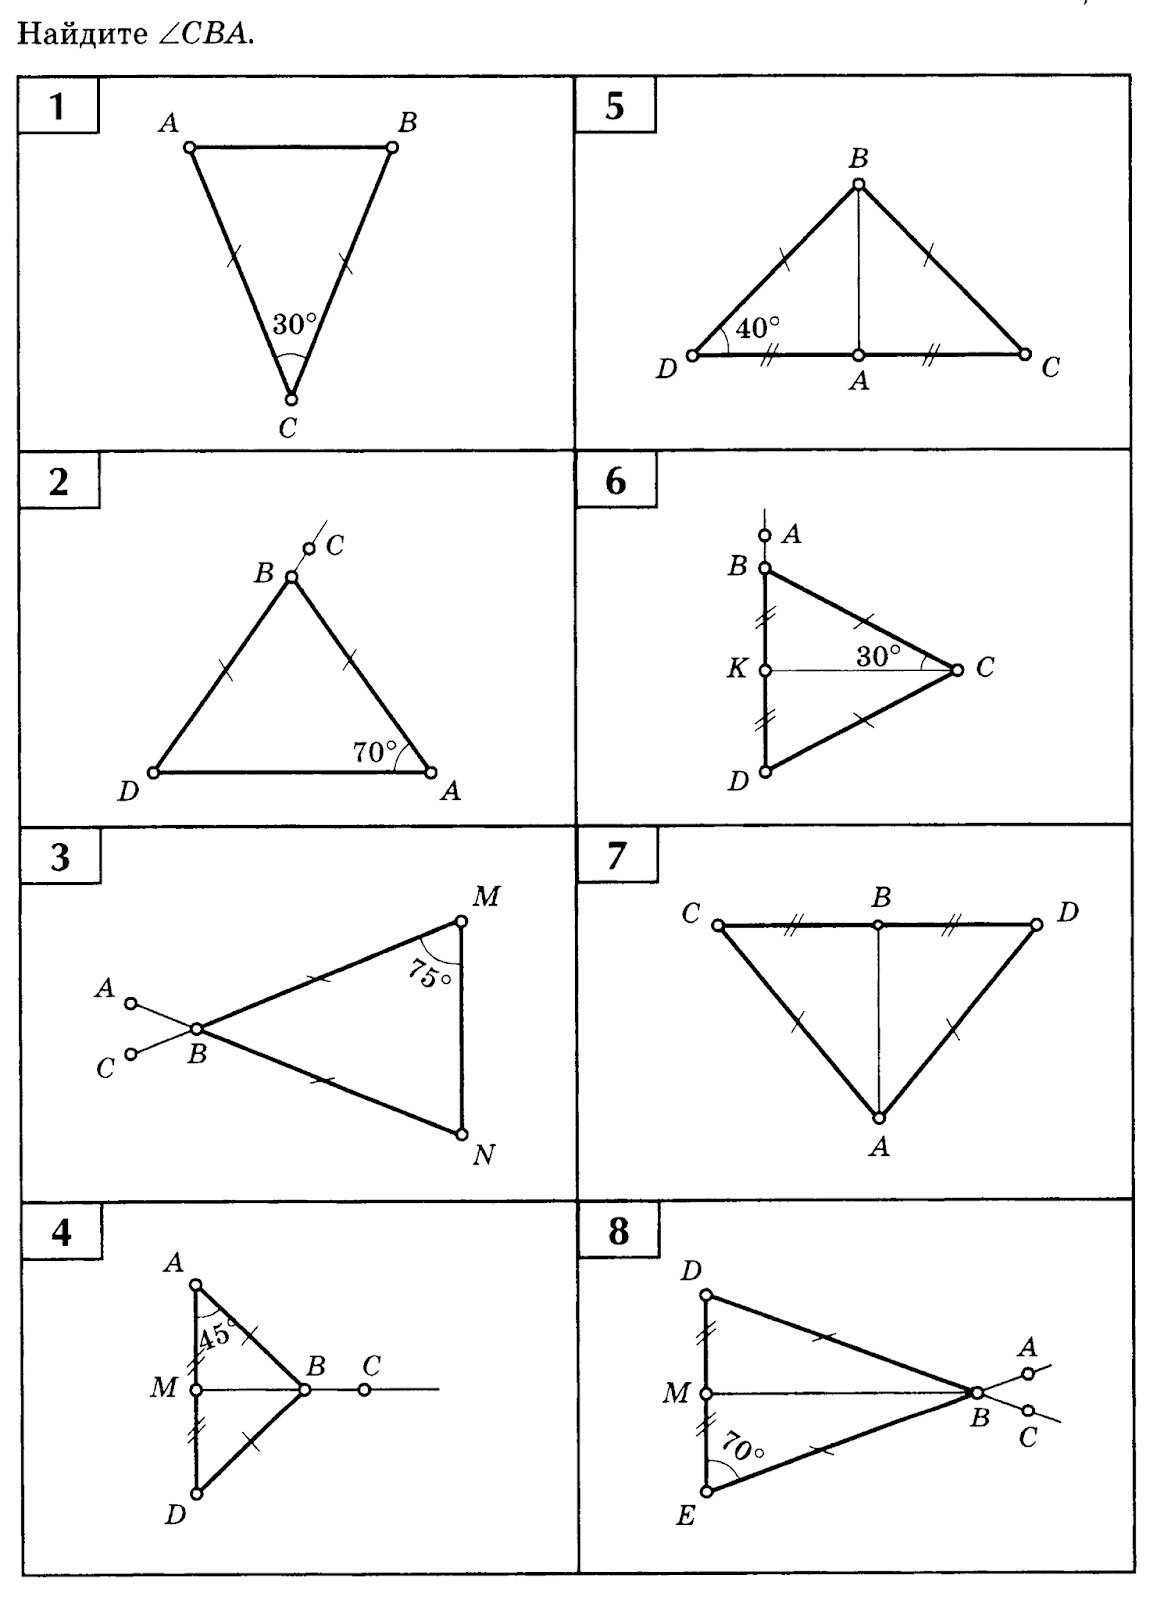 Задачи на чертежах 7 9 классы. Решение задач по готовым чертежам равнобедренный треугольник 7 класс. Равнобедренный треугольник задачи на готовых чертежах 7 класс. Равнобедренный треугольник задачи на готовых чертежах 7 класс Балаян. Задачи на готовых чертежах 7-9 классы равнобедренный треугольник.